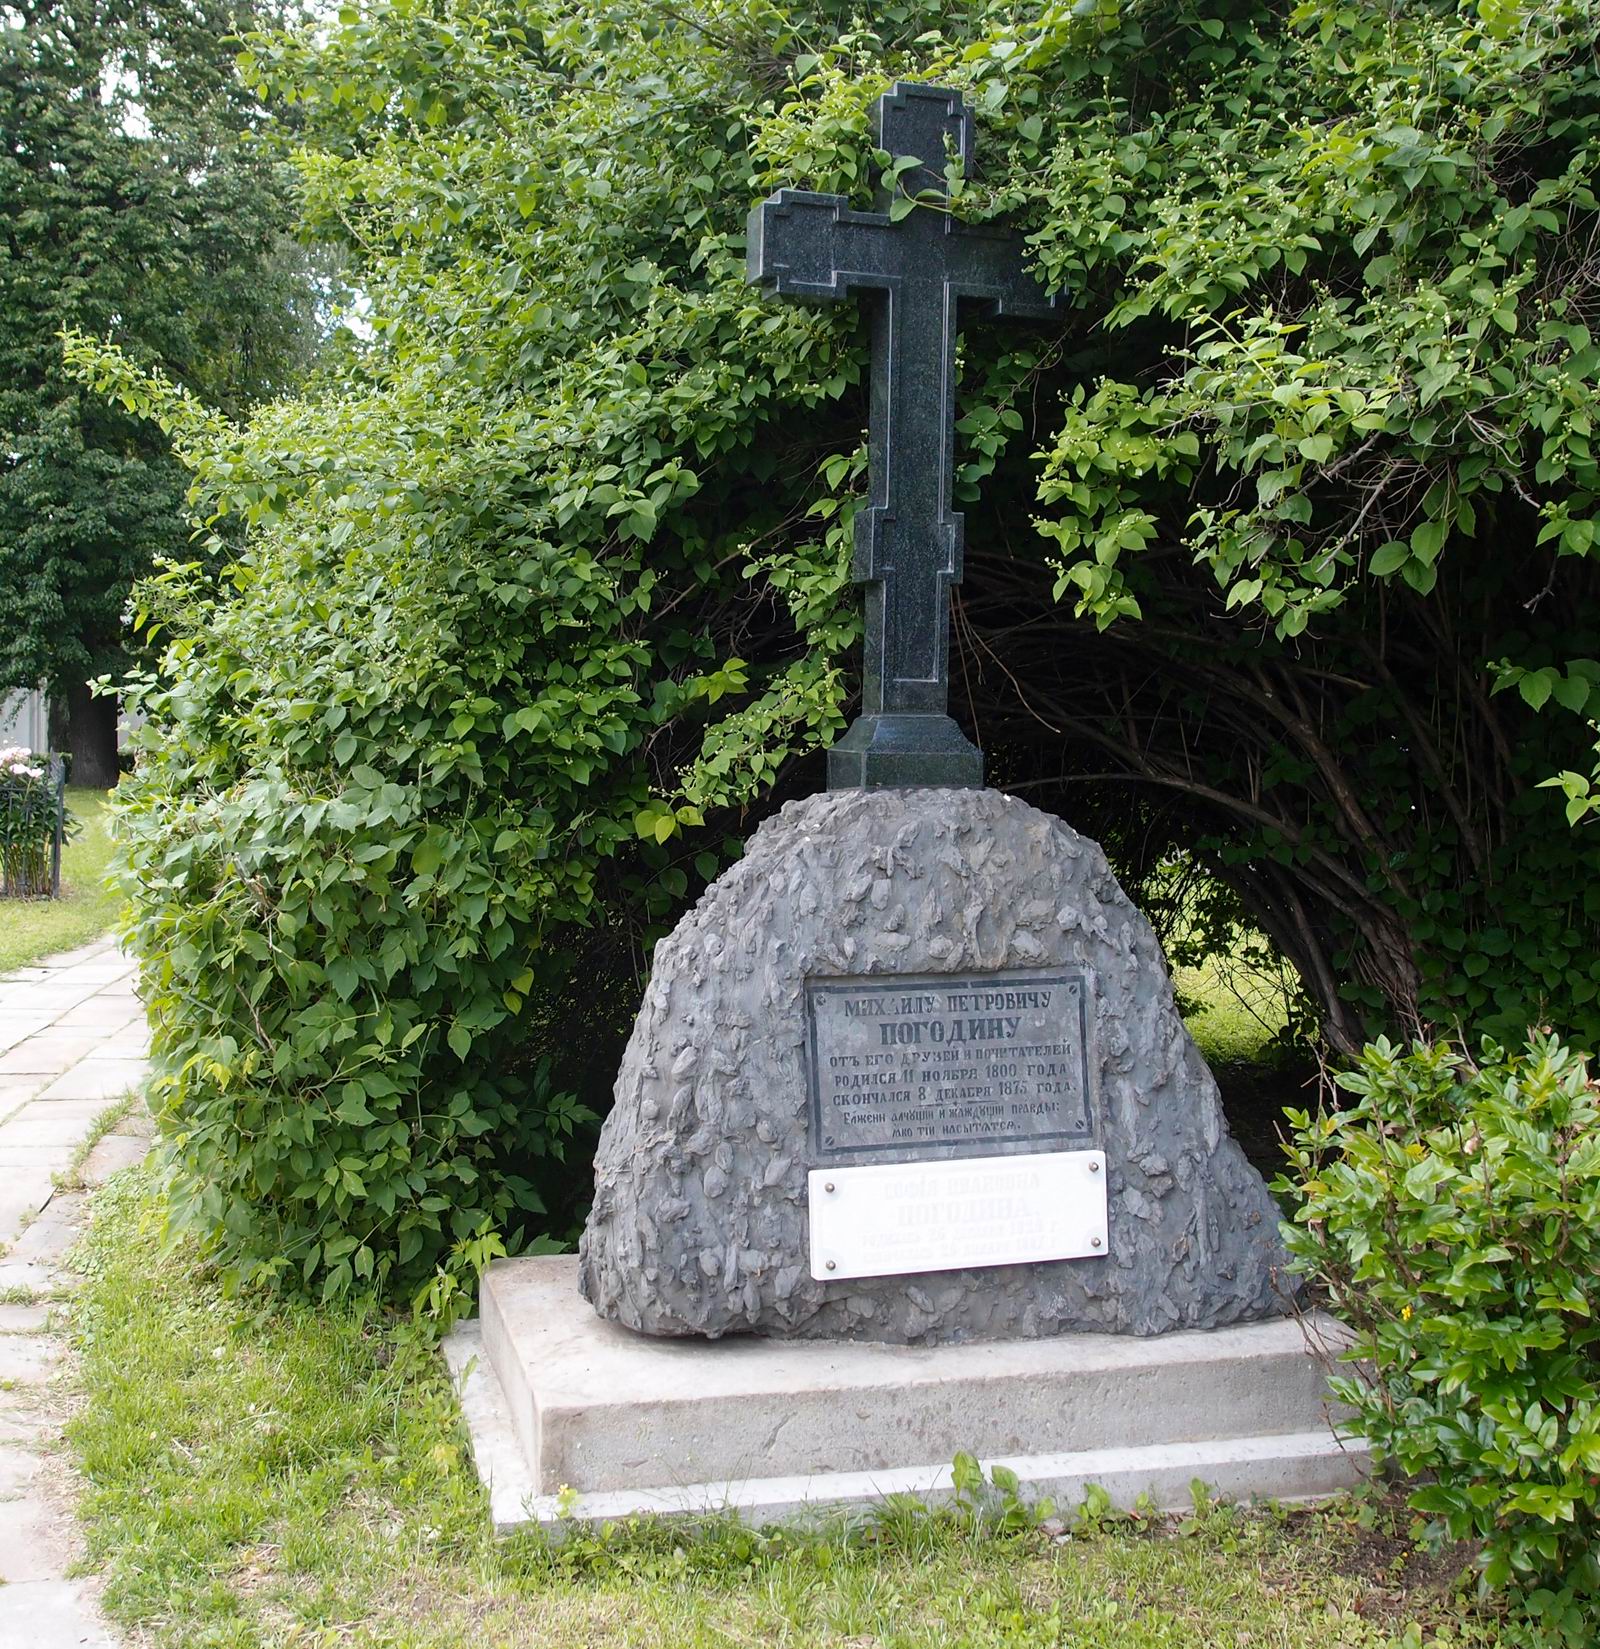 Памятник на могиле Погодина М.П. (1800-1875), в Новодевичьем монастыре. Нажмите левую кнопку мыши чтобы увидеть памятник до реставрации.